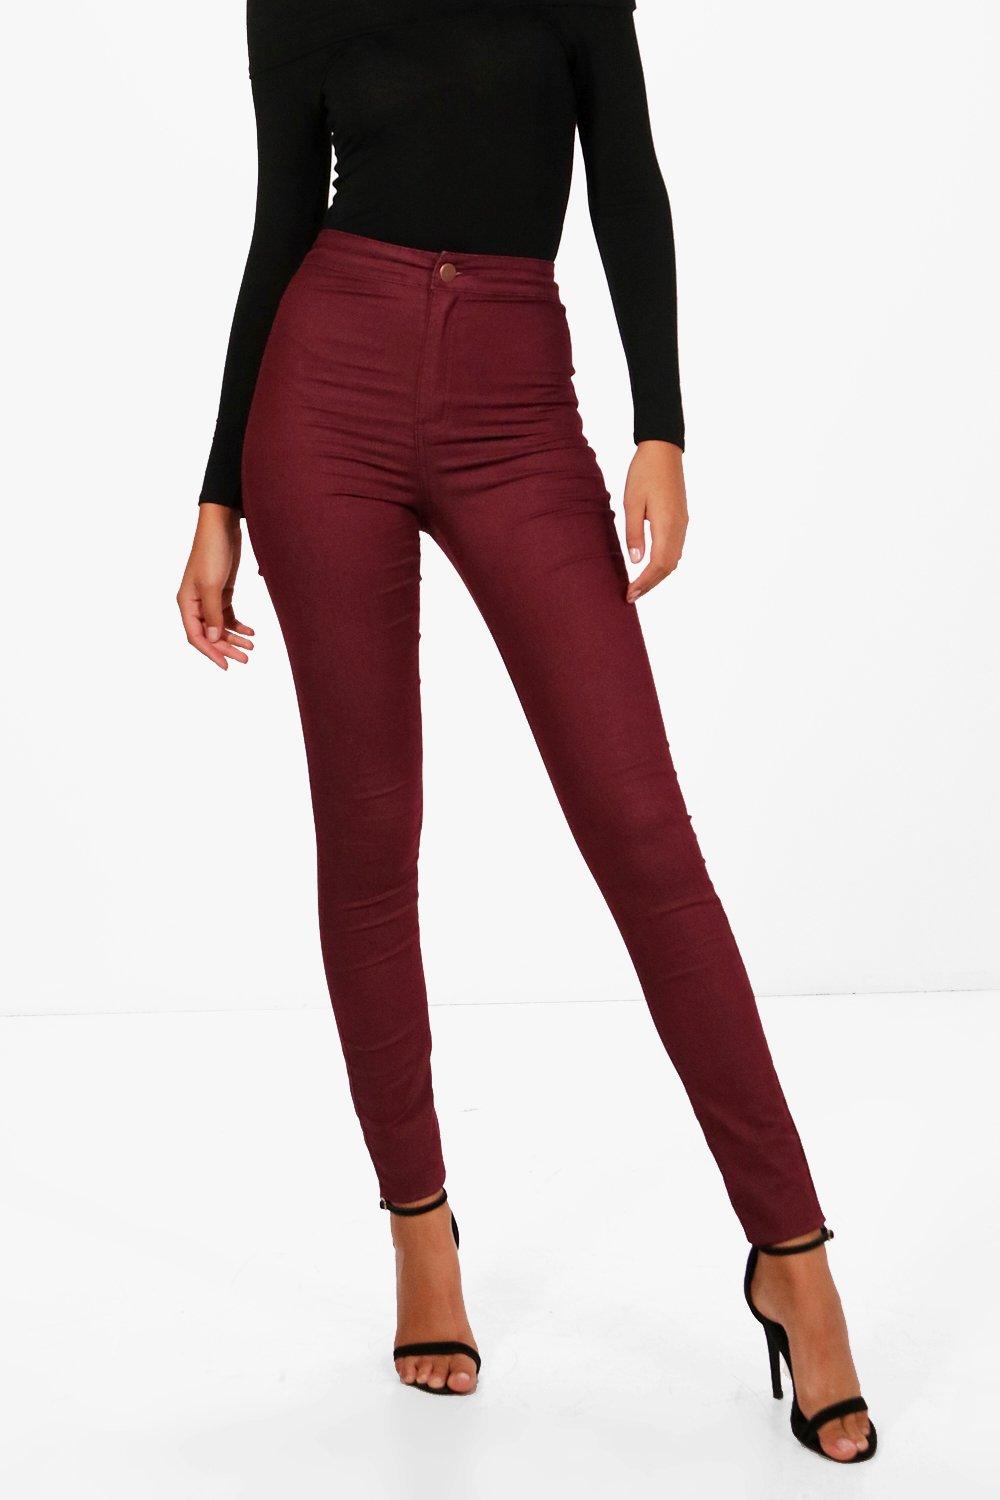 burgundy high waisted jeans